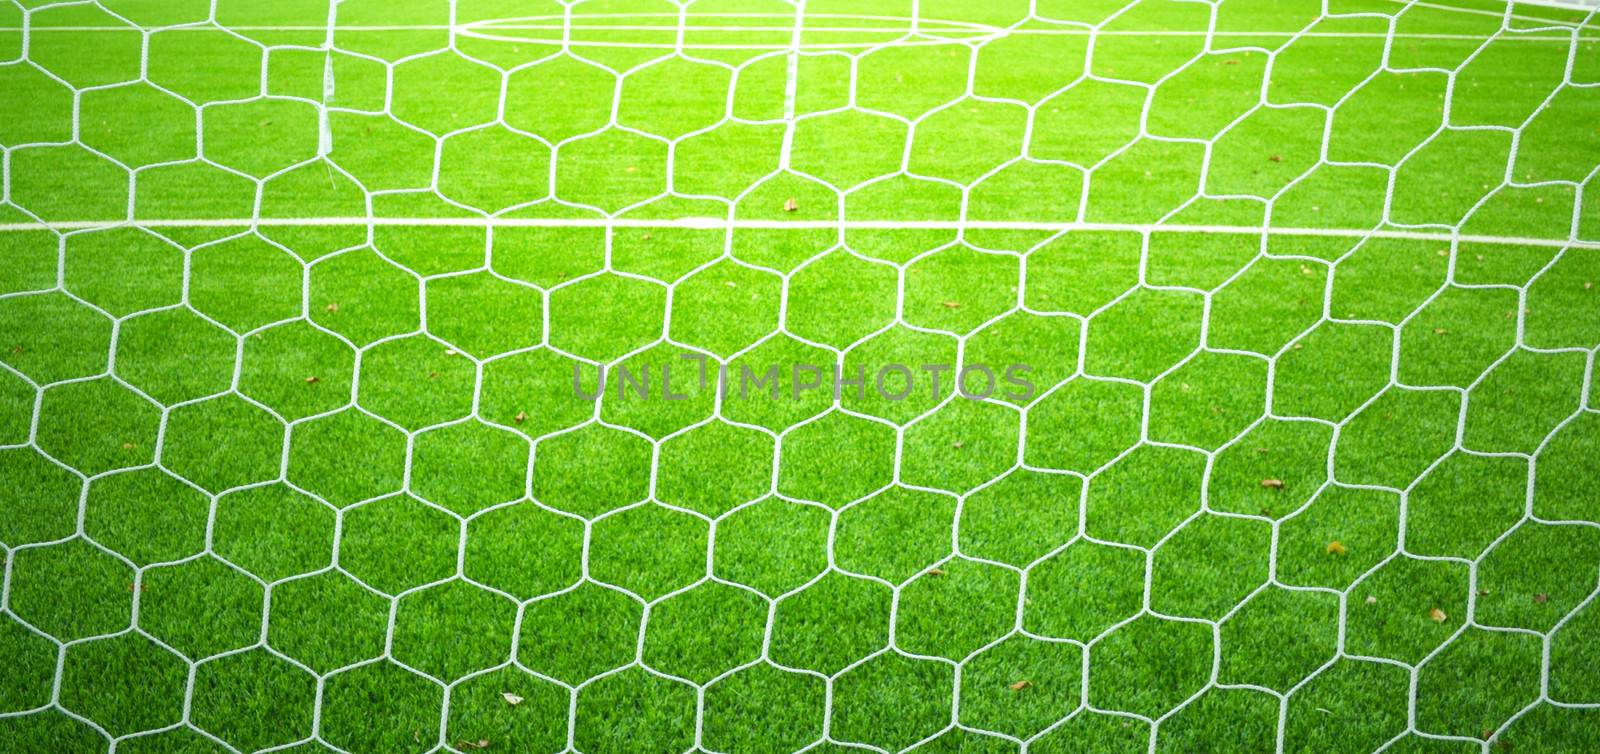 Soccer nets by apichart